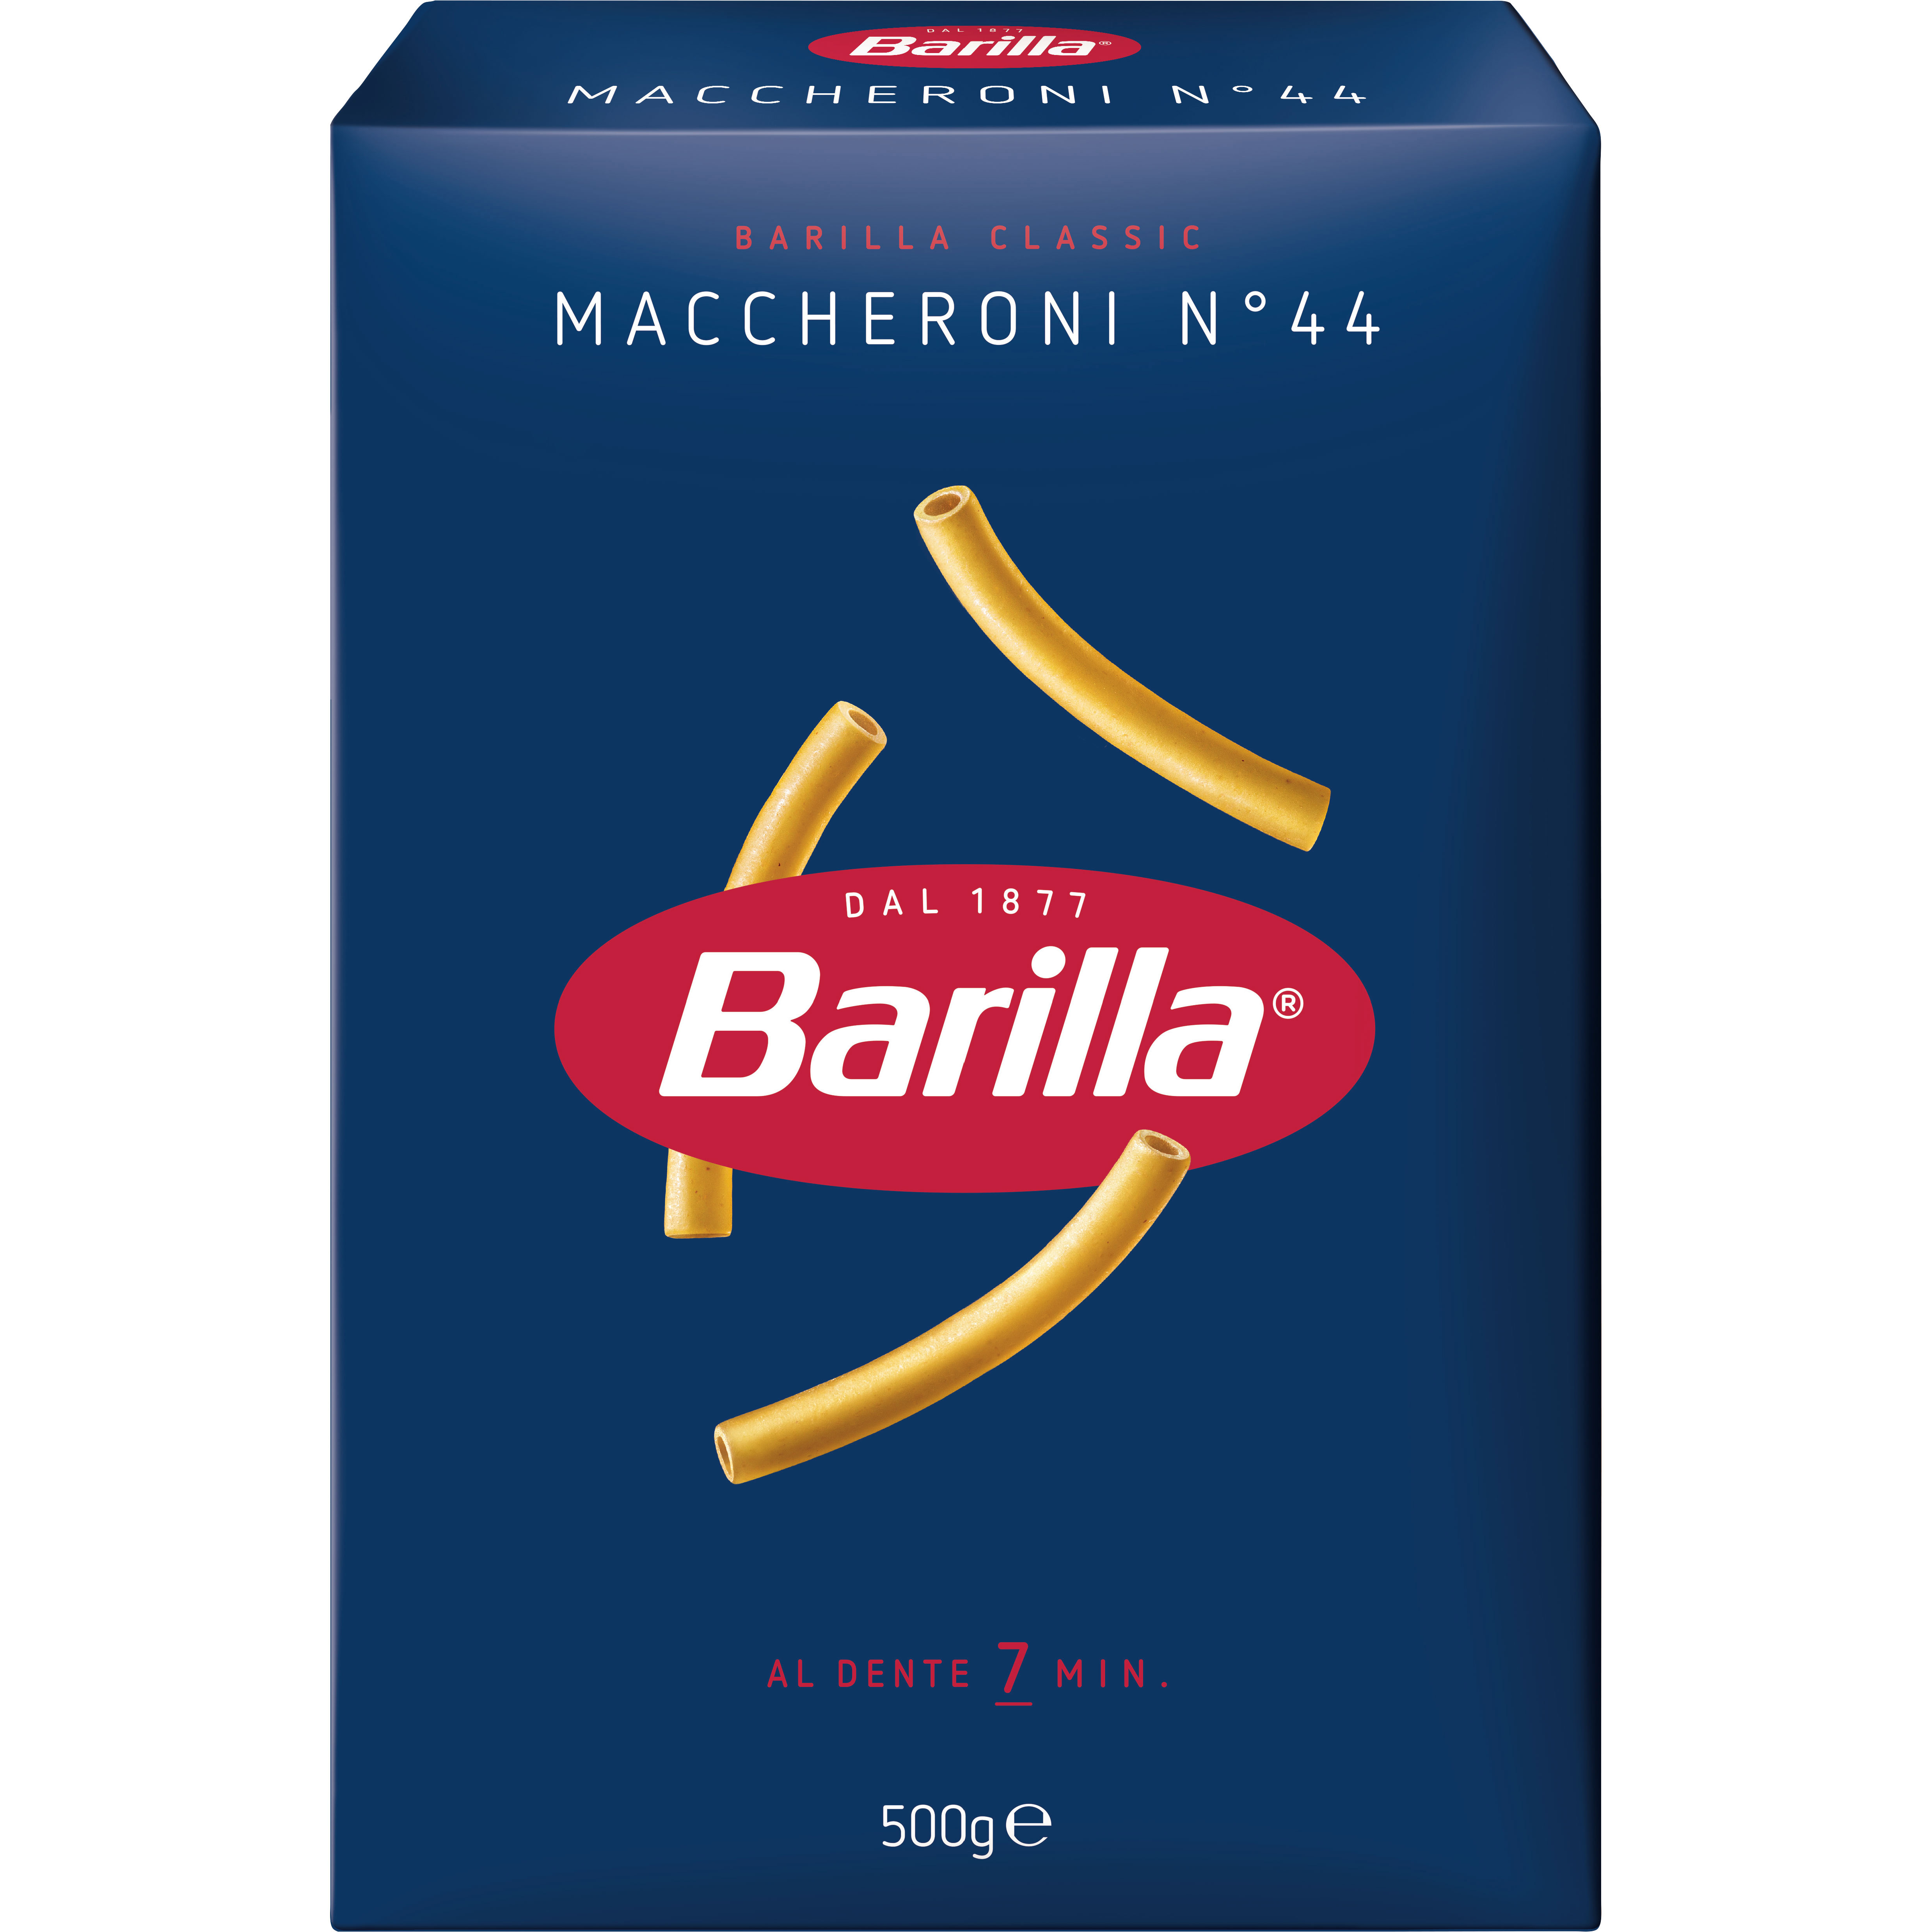 Макаронные изделия Barilla Maccheroni №44 500 г - фото 1